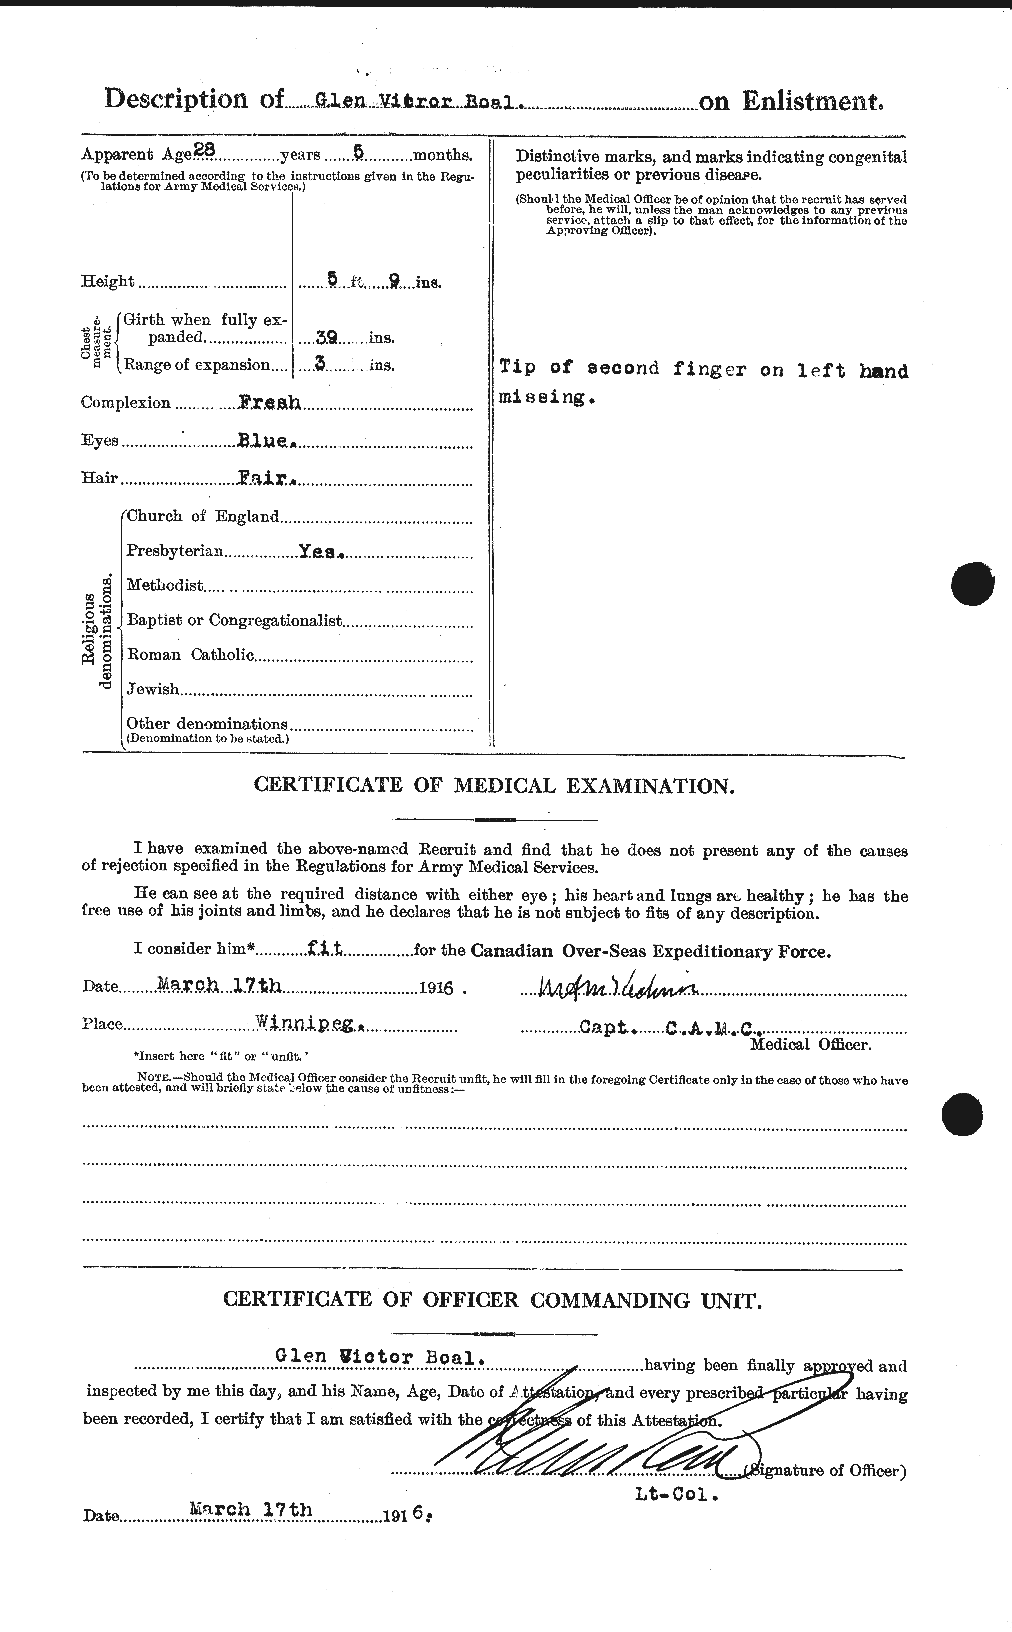 Dossiers du Personnel de la Première Guerre mondiale - CEC 247308b